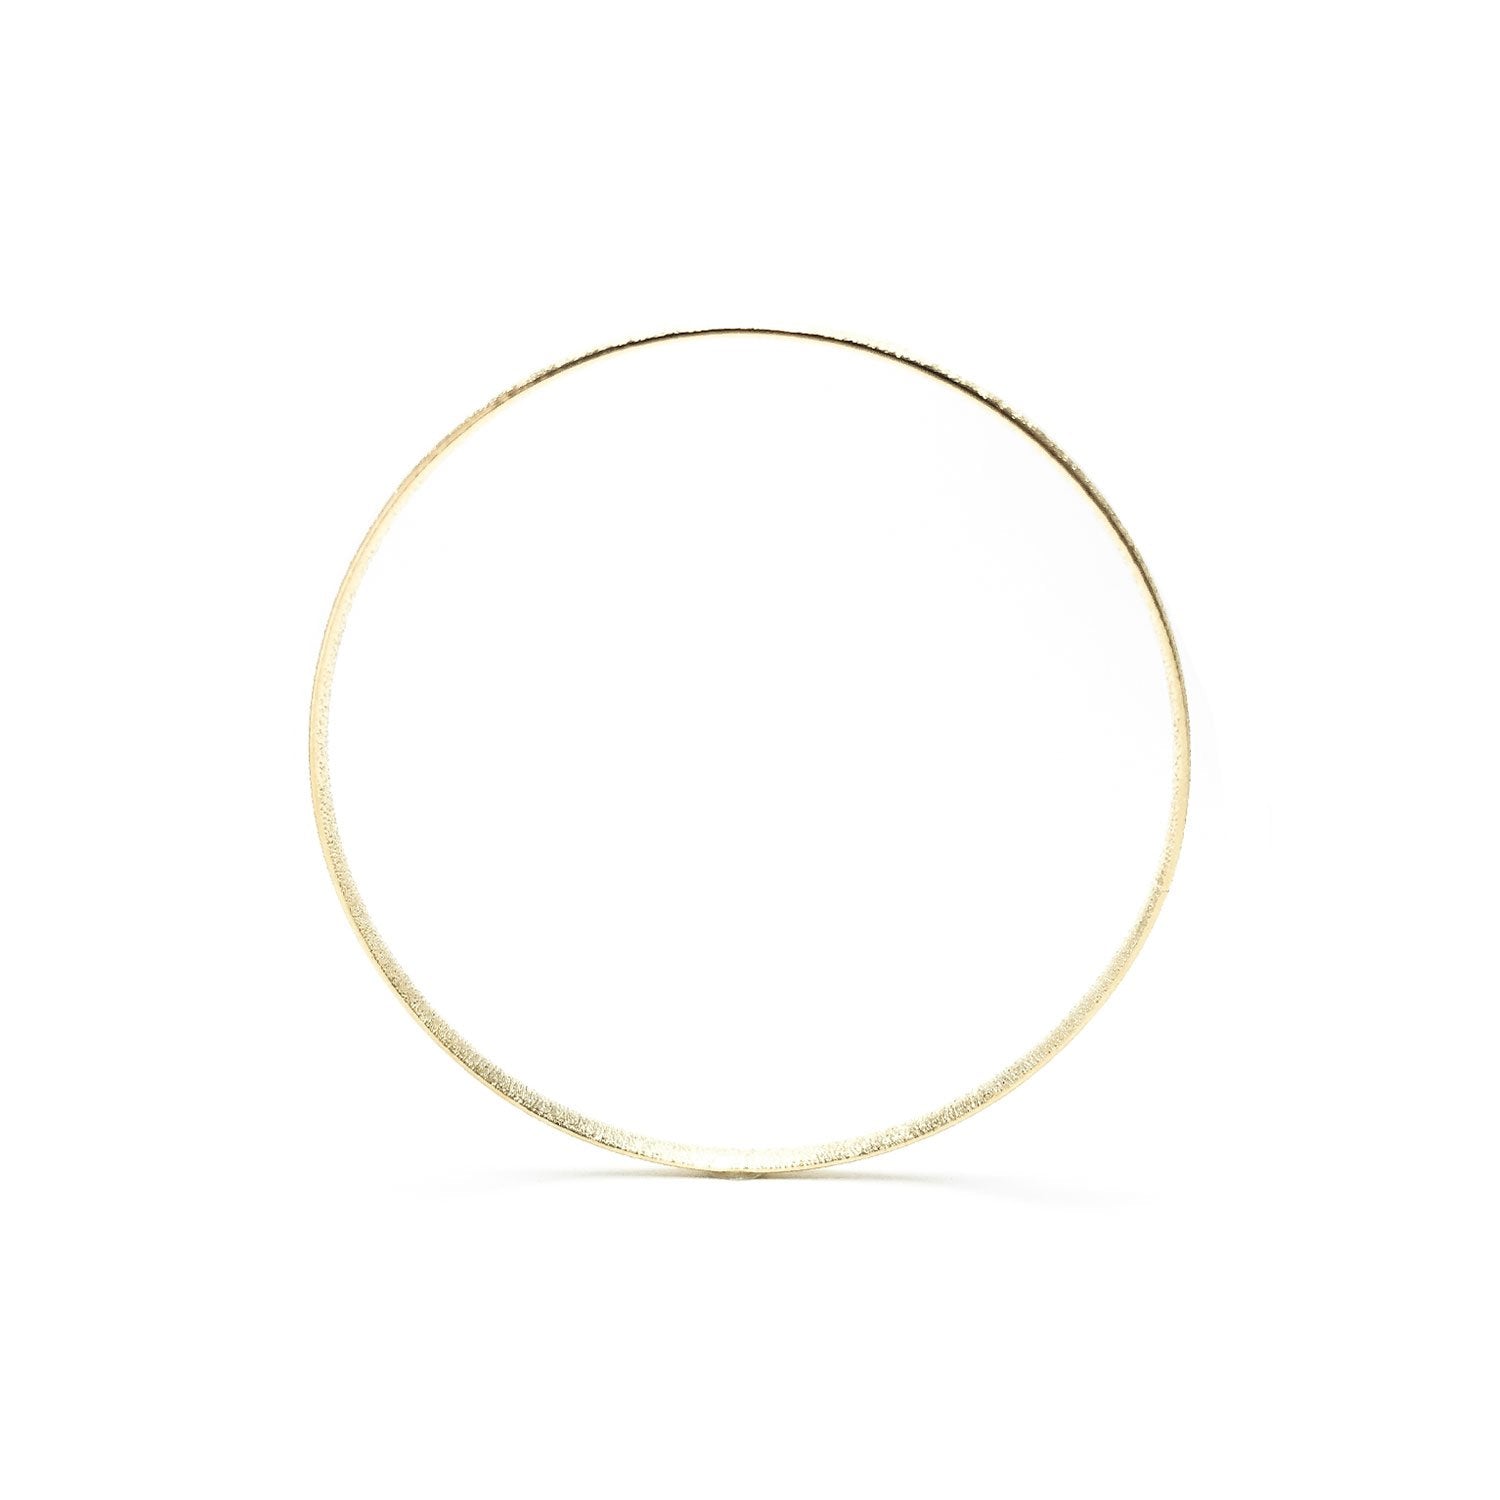 Moon and Lola - Genoa Bangle brushed gold thin bracelet